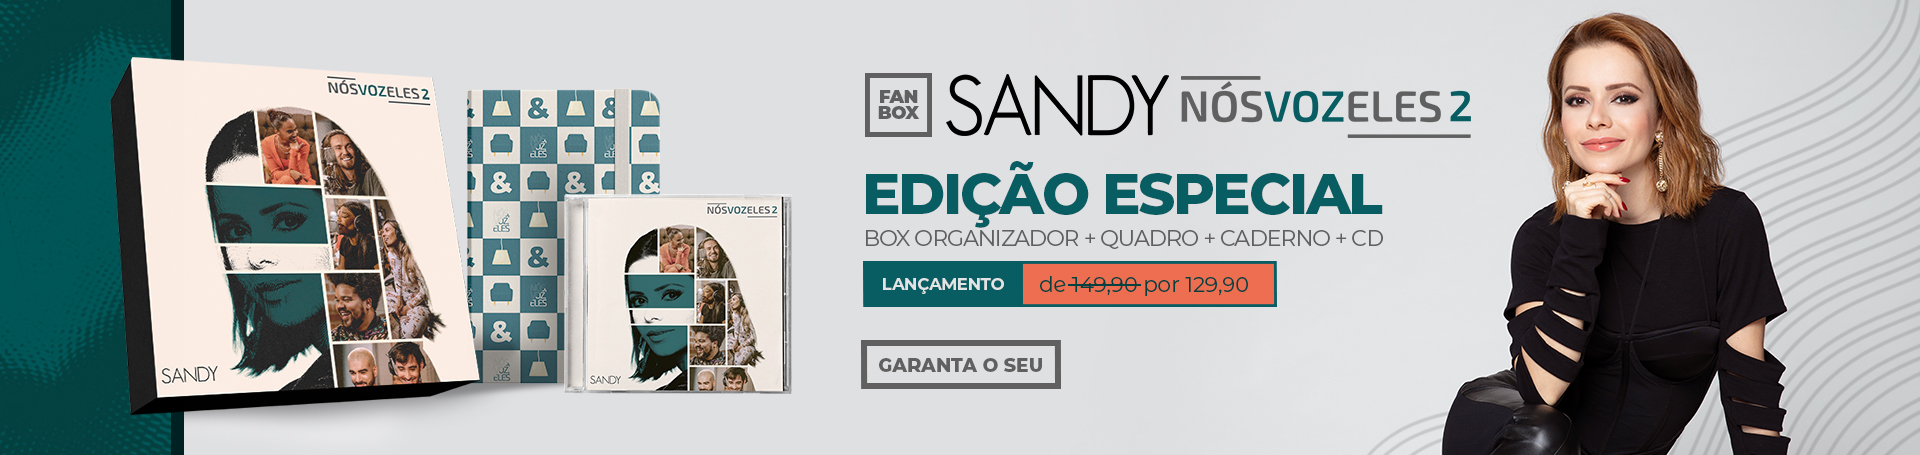 sandy fan box